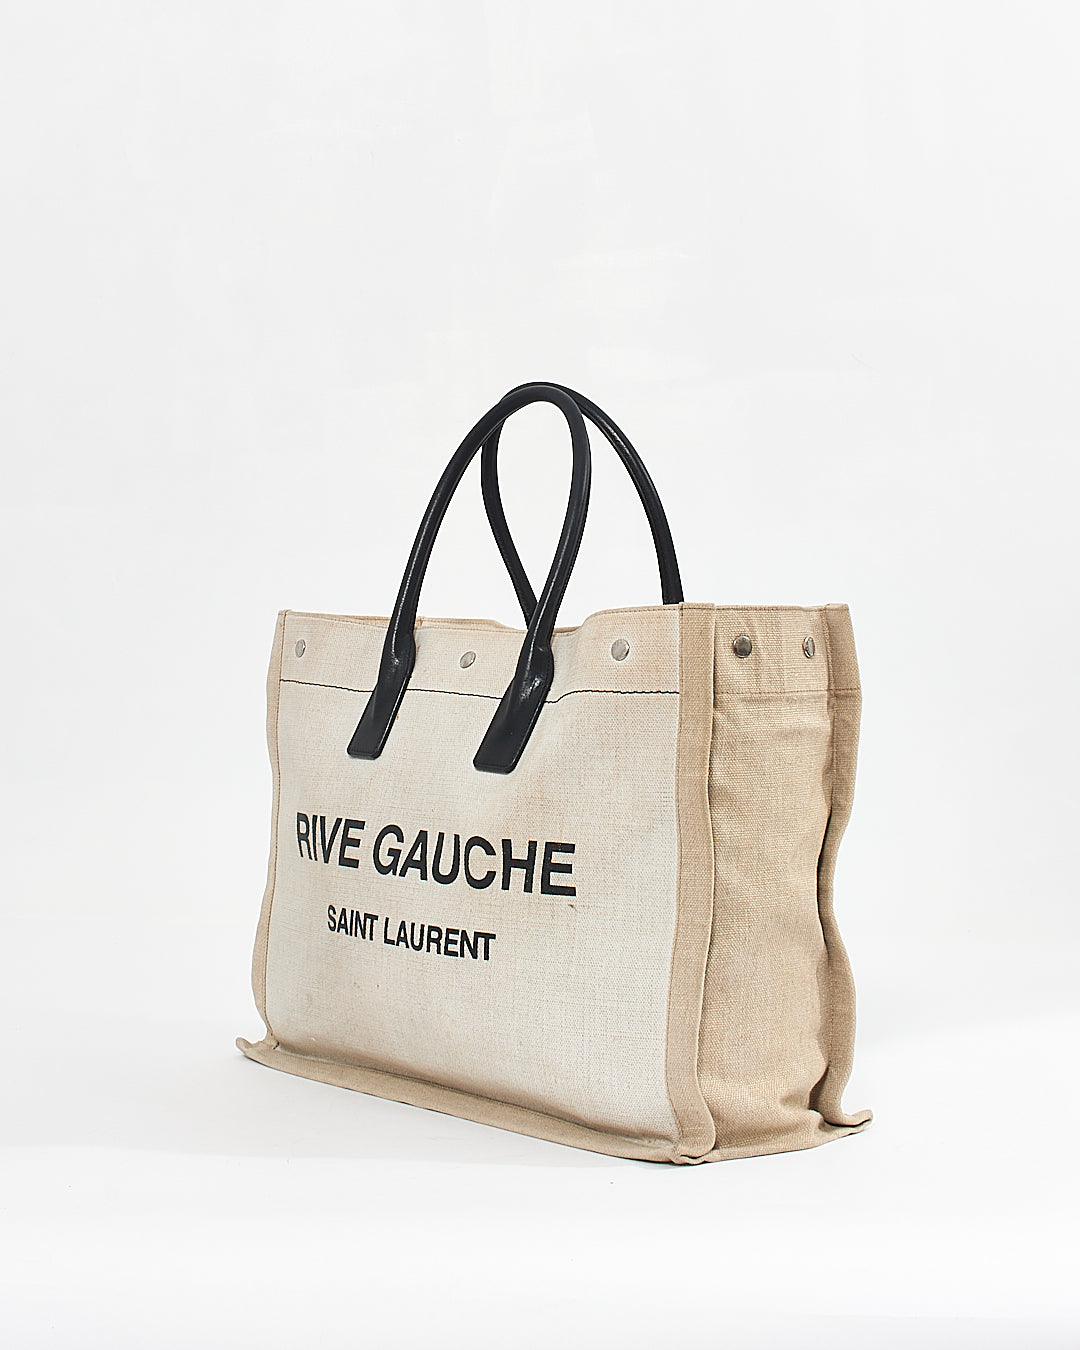 Saint Laurent Grand sac cabas imprimé Rive Gauche en toile blanche Lin